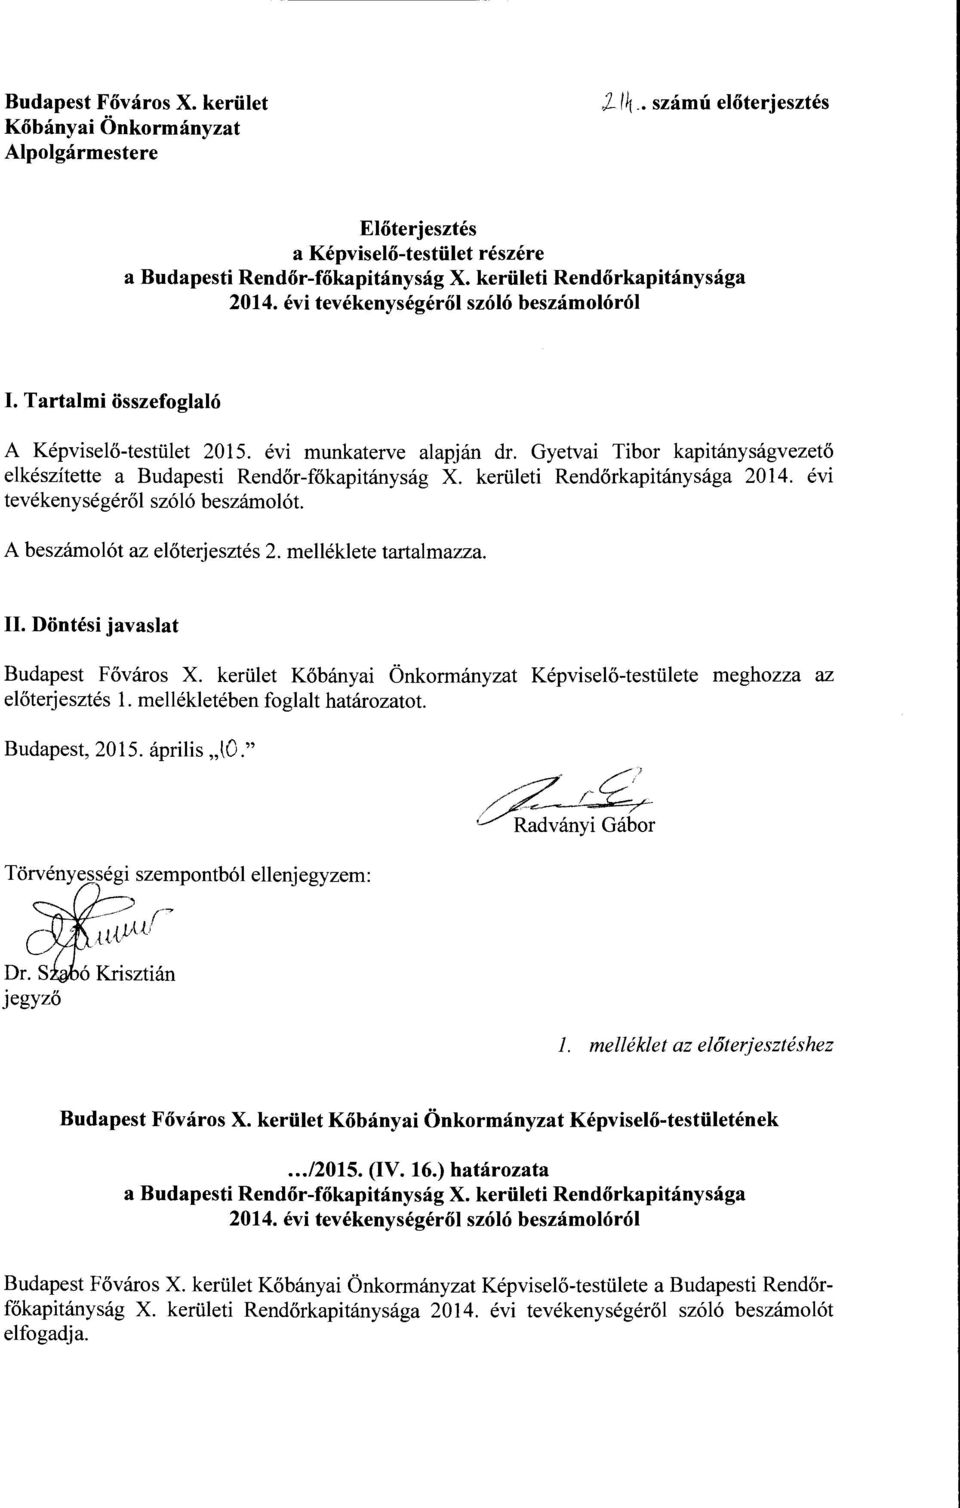 Gyetvai Tibor kapitányságvezető elkészítette a Budapesti Rendőr-főkapitányság X. kerületi Rendőrkapitánysága 2014. évi tevékenységéről szóló beszámolót. A beszámolót az előterjesztés 2.